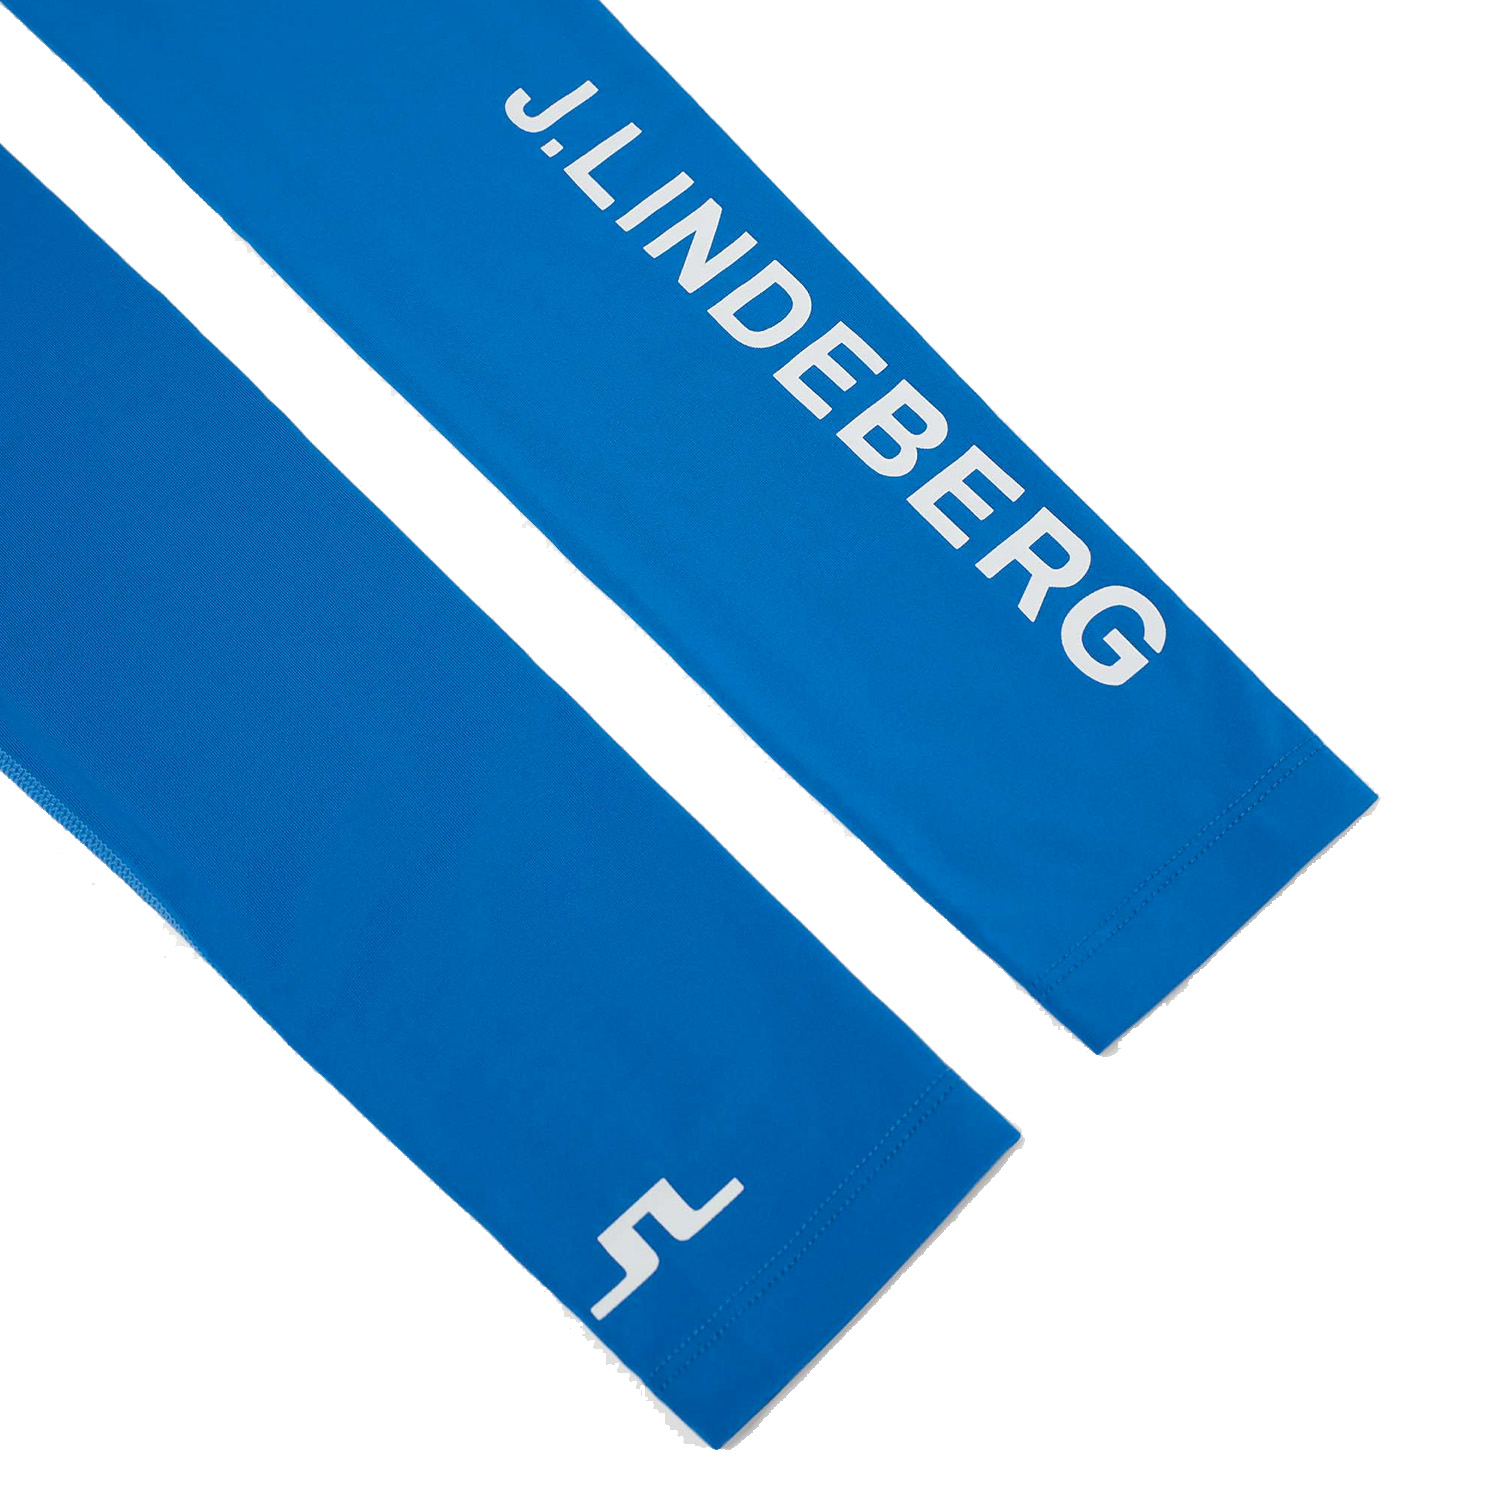 J Lindeberg Enzo Soft Compression Sleeves